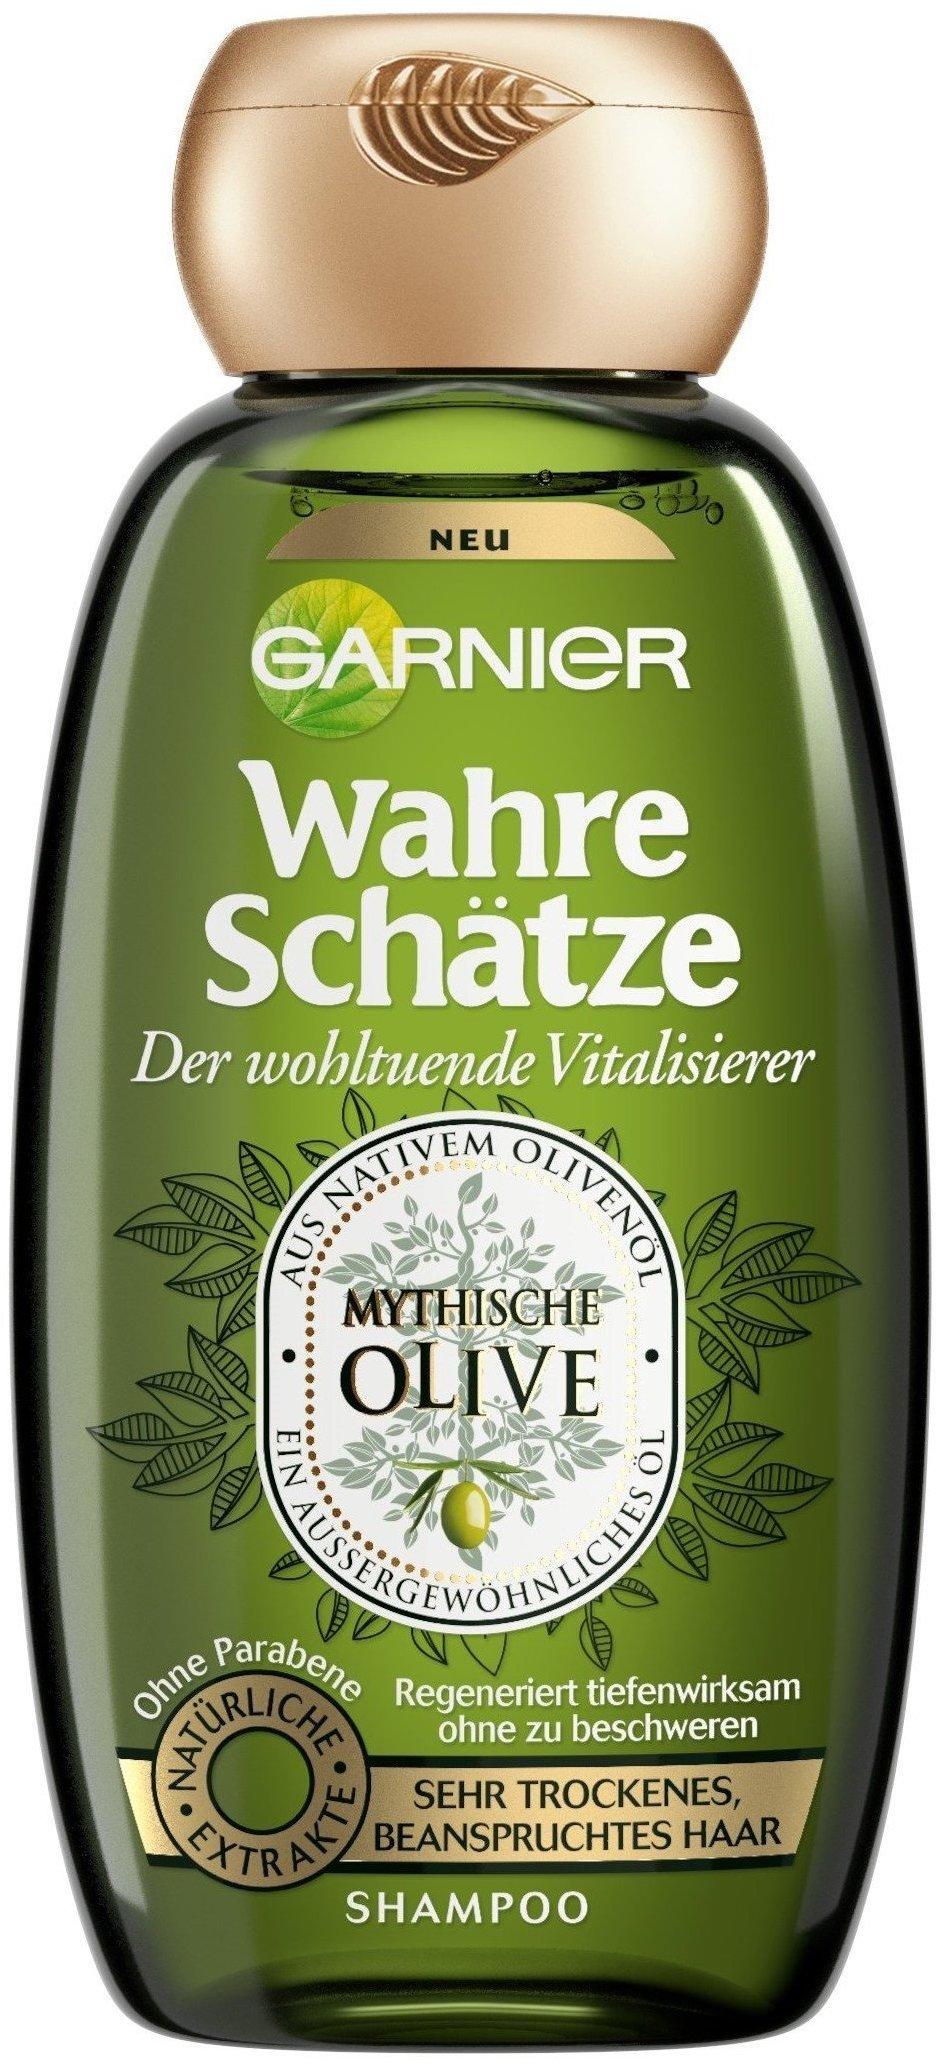 Garnier Wahre Schätze Shampoo Mythische Olive (250ml) Test ❤️ Jetzt ab 2,04  € (Februar 2022) Testbericht.de